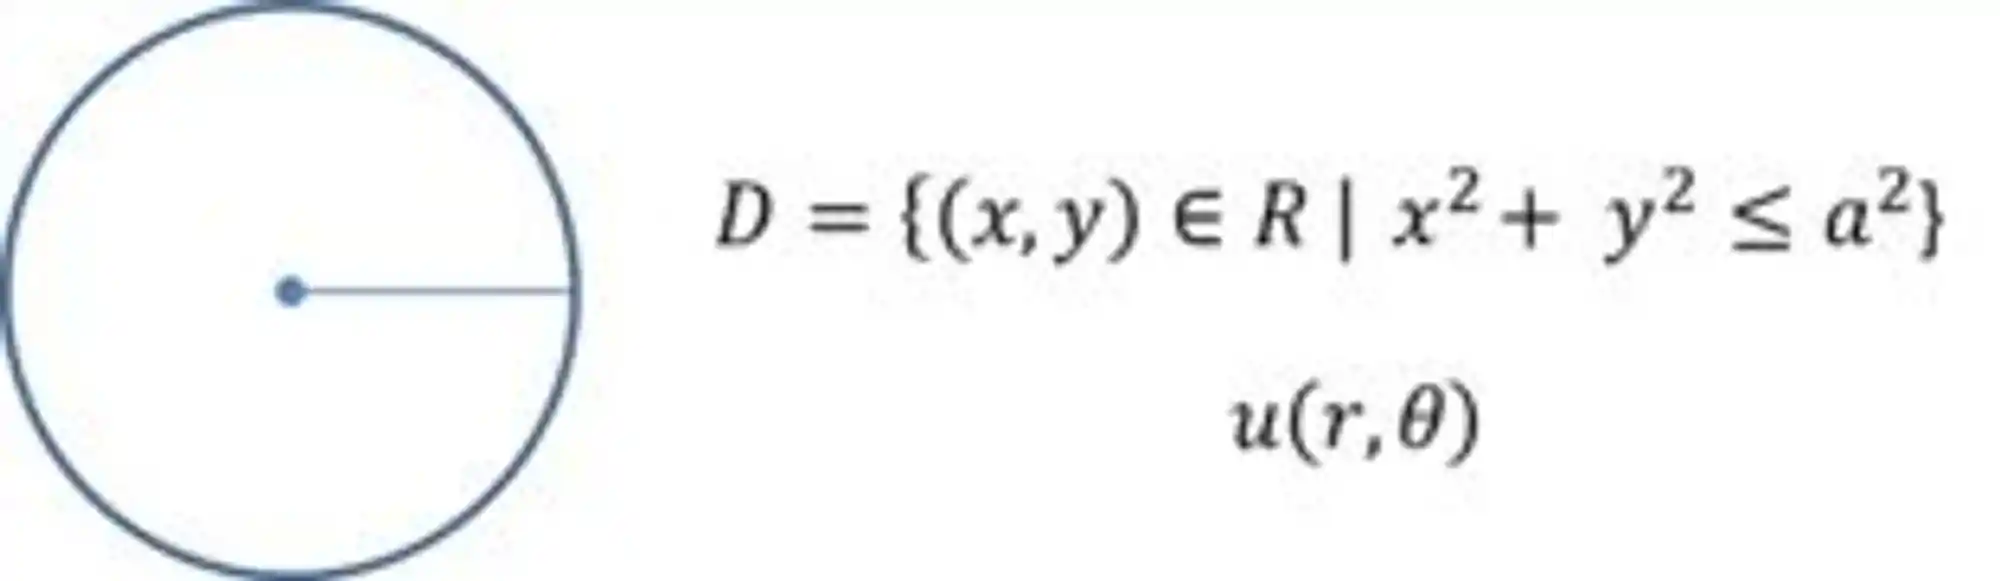 Equação da circunferência.